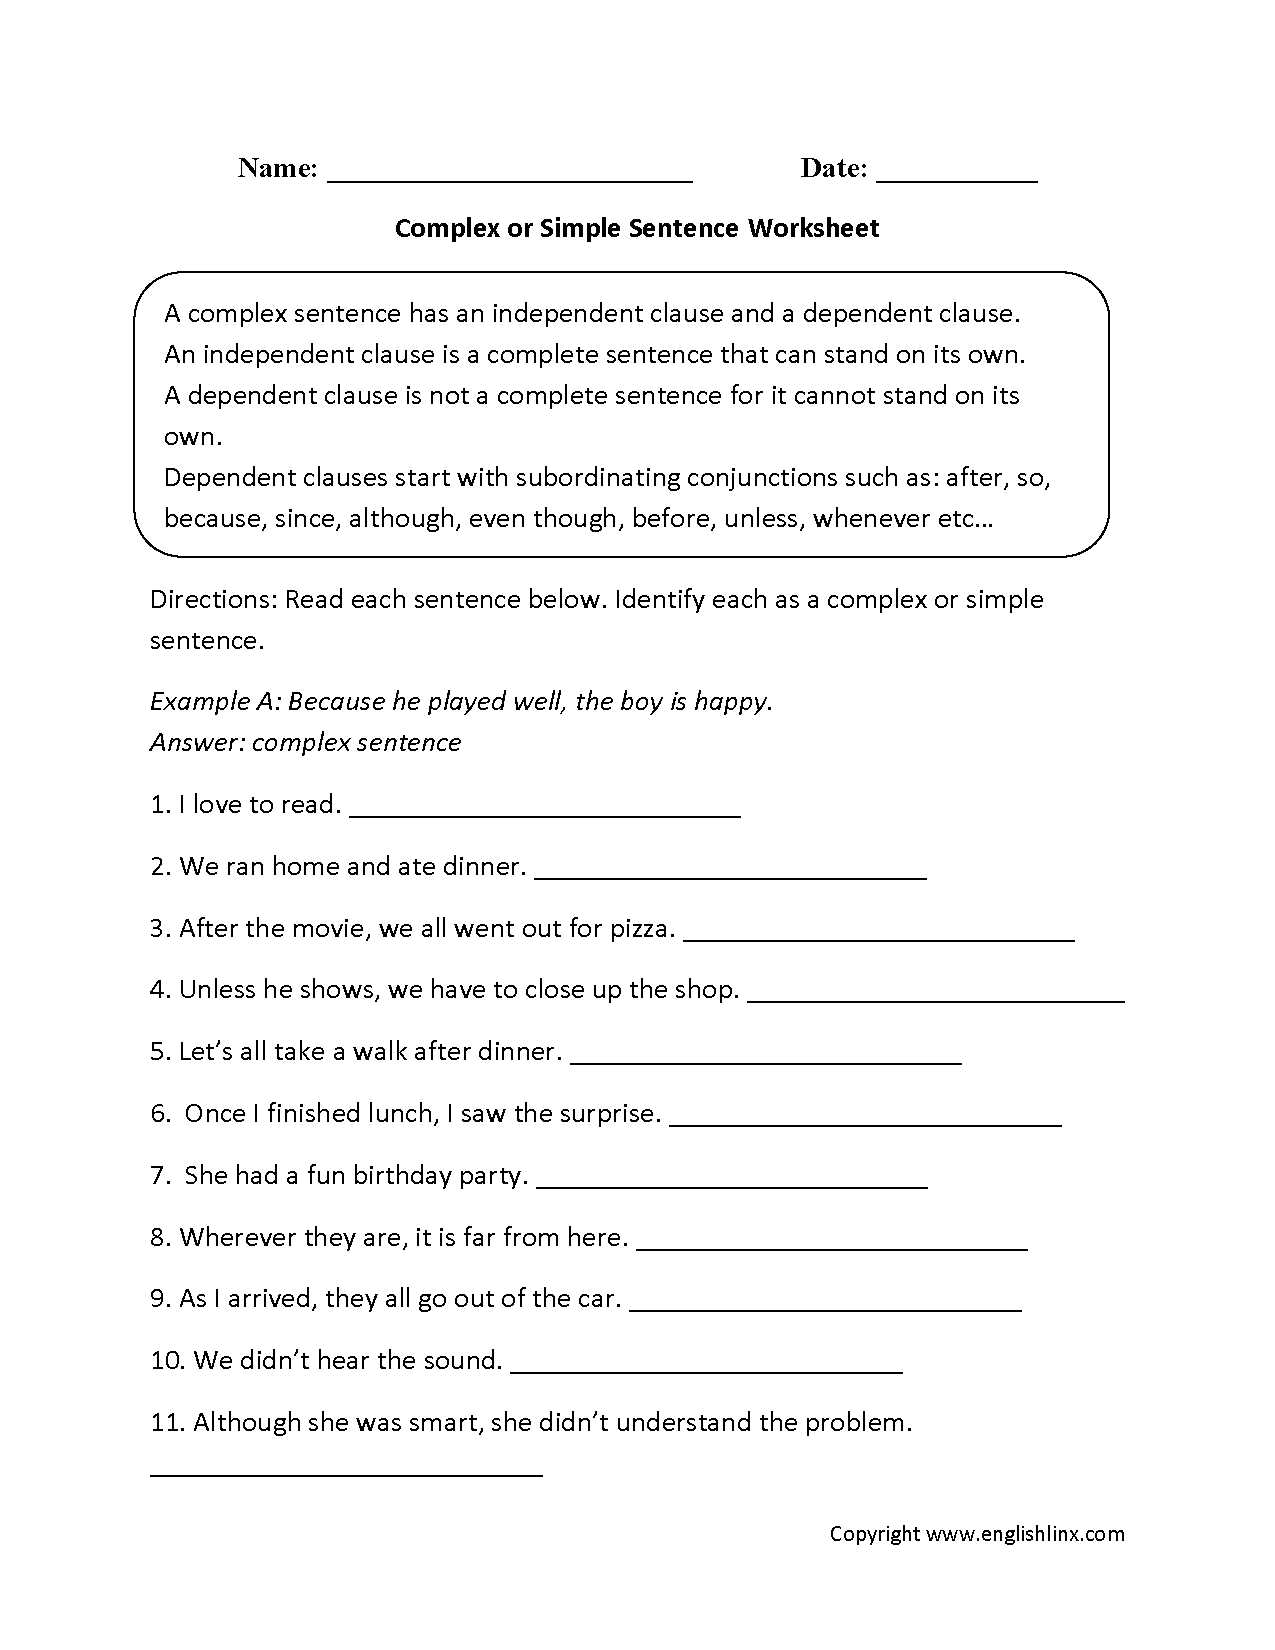 Measure Up Worksheet together with Plex or Simple Sentences Worksheet Mona Pinterest